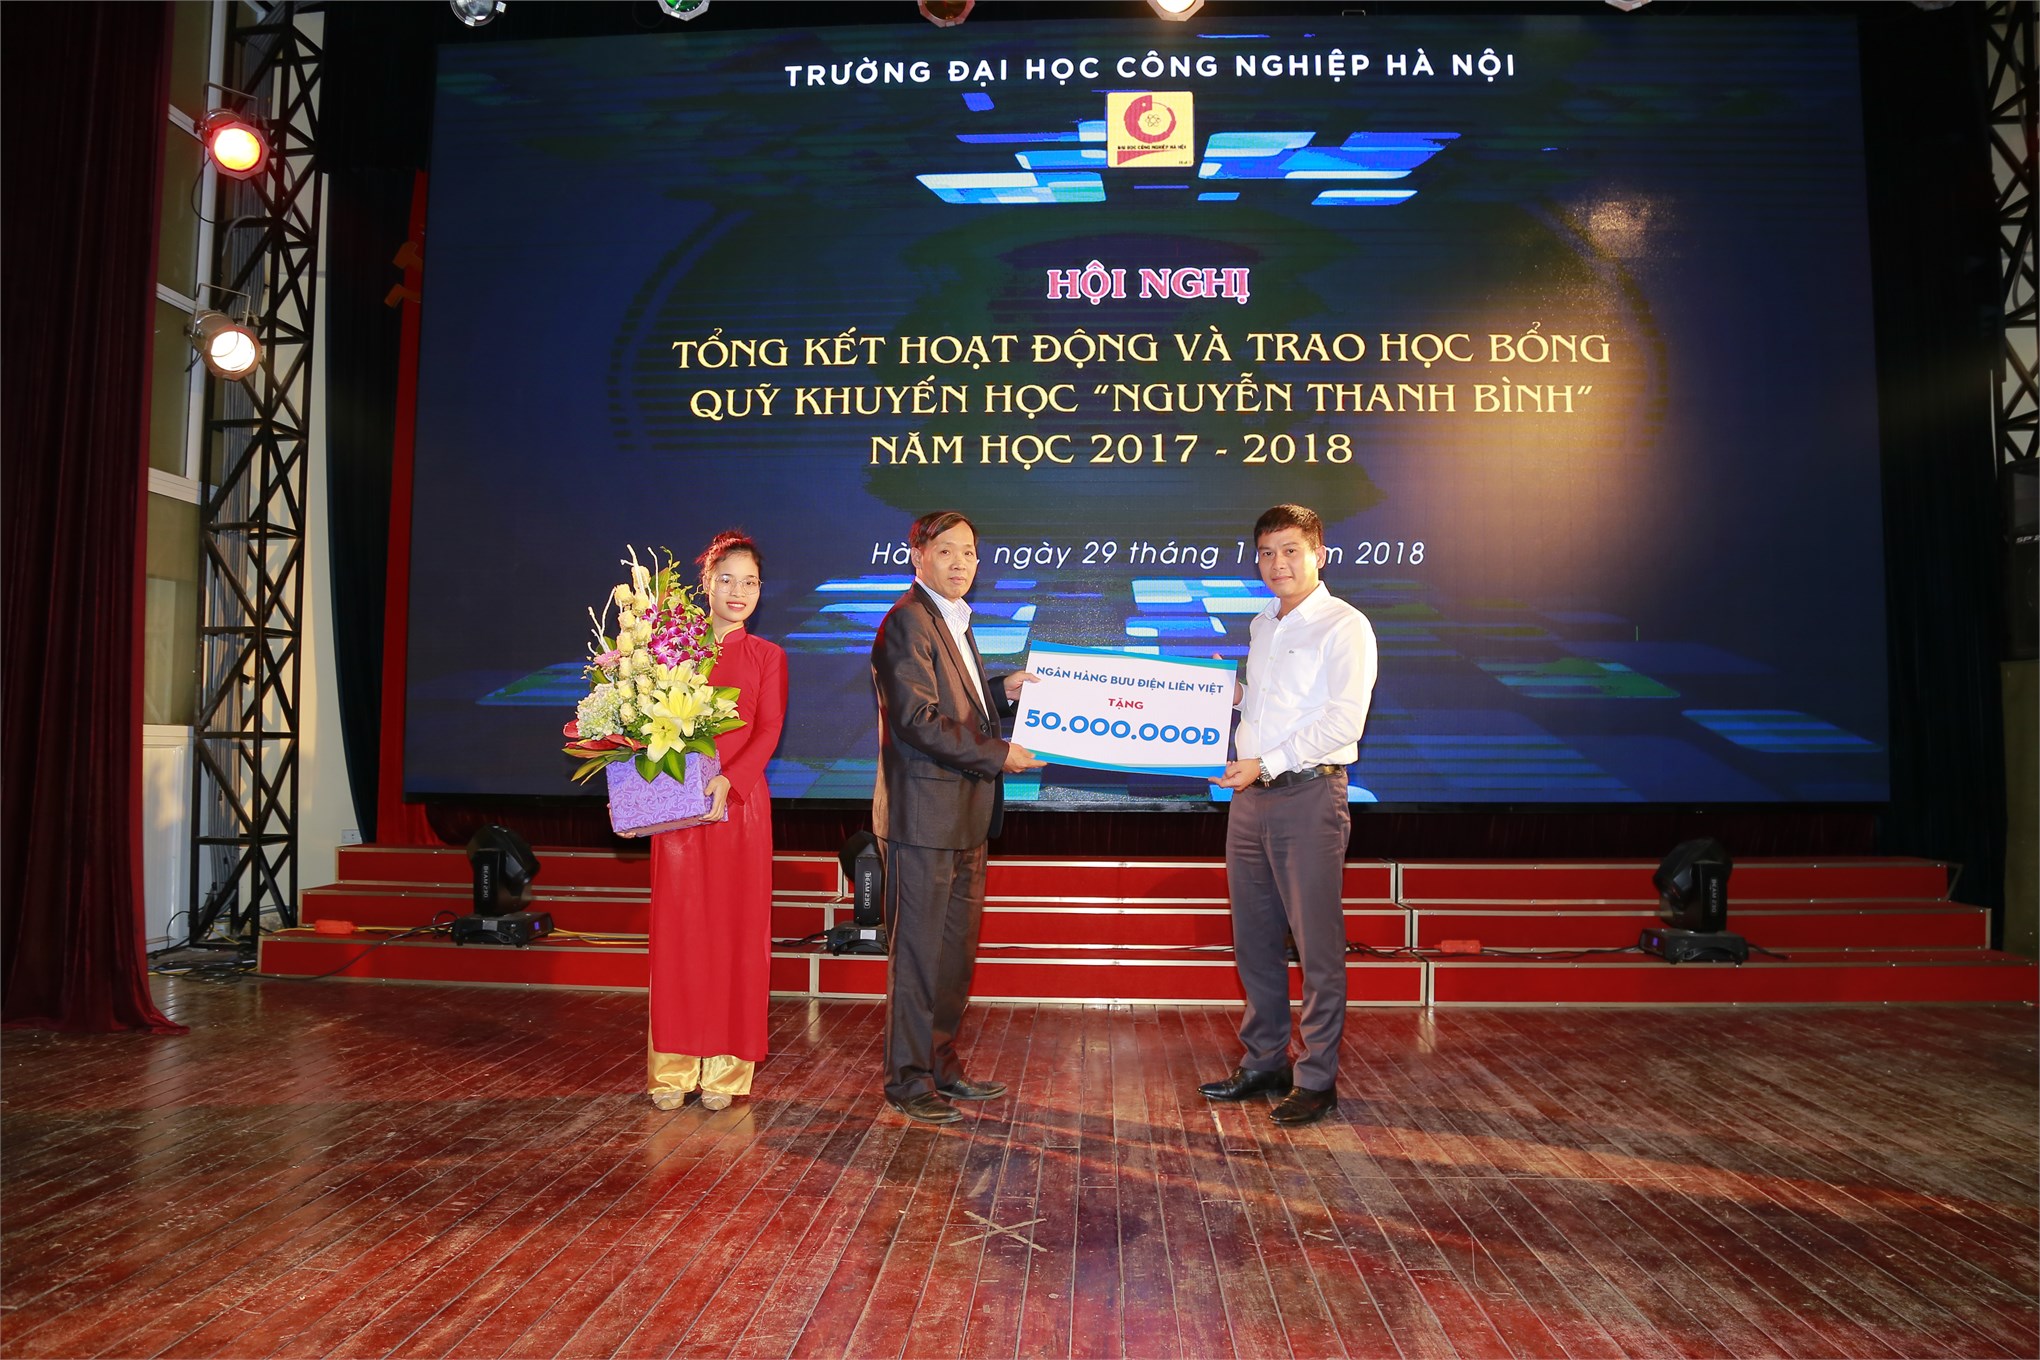 Tổng kết hoạt động và trao học bổng Quỹ khuyến học `Nguyễn Thanh Bình` năm học 2017-2018